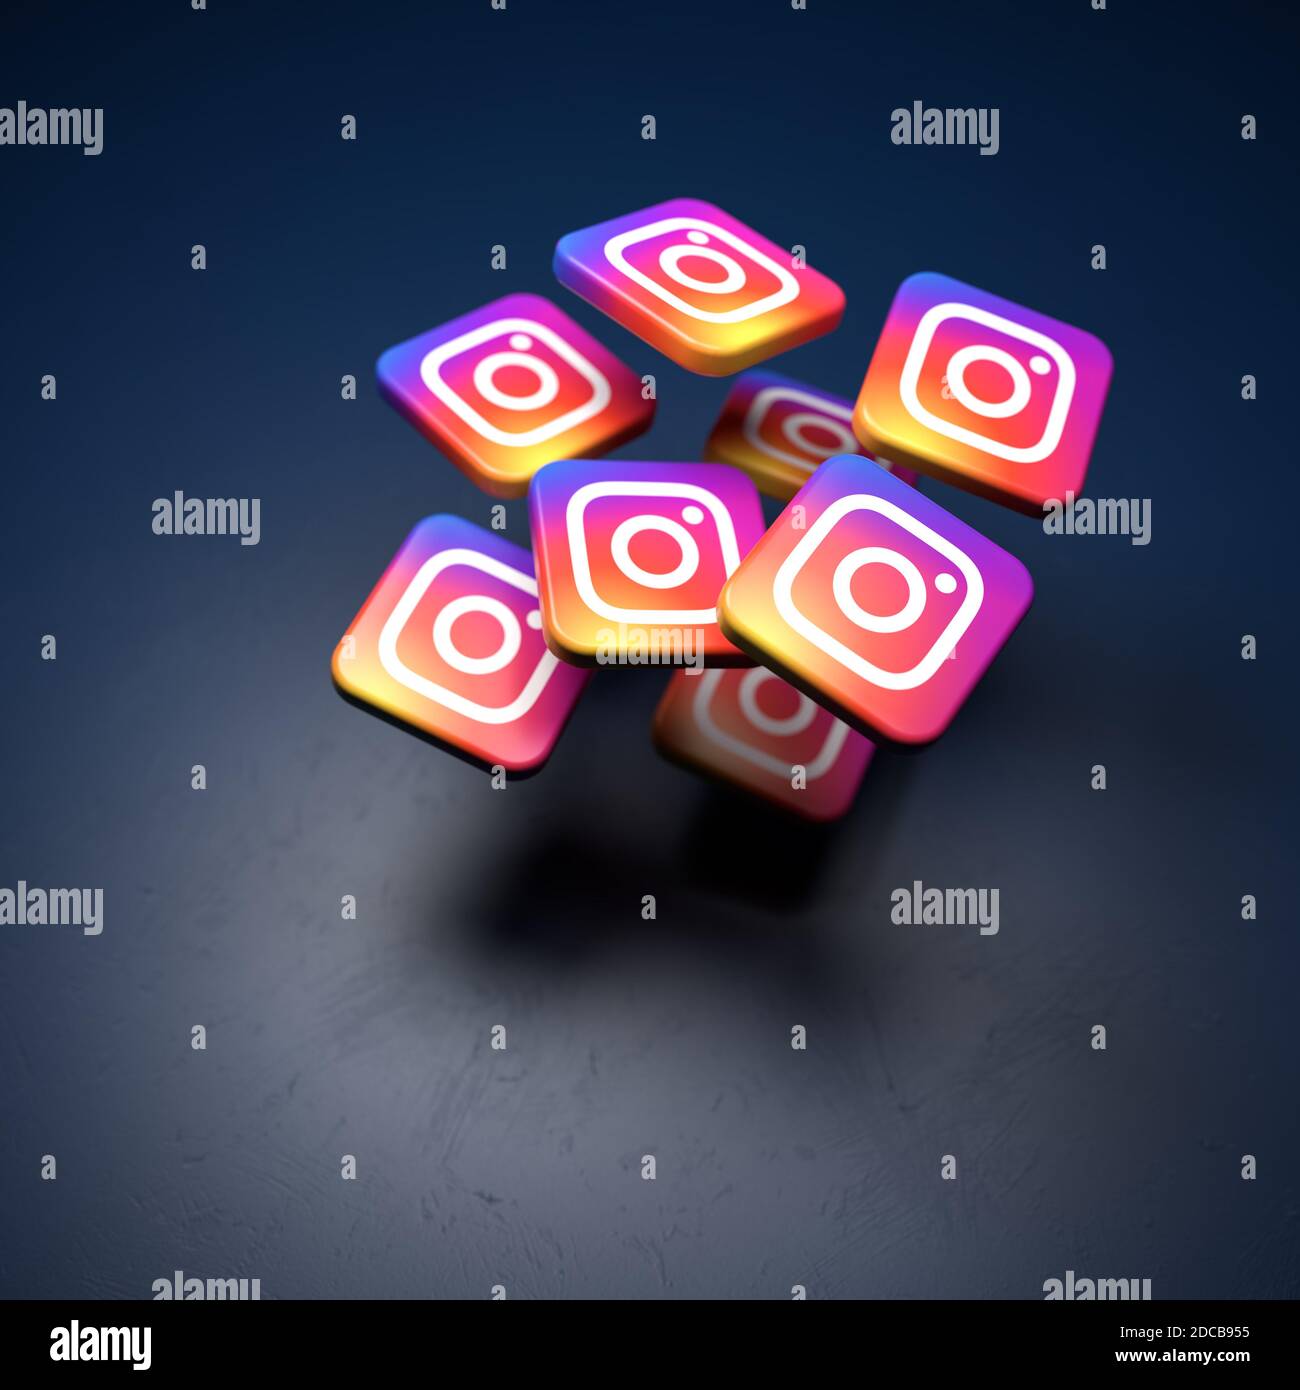 Logos der Social-Media-Website zum Teilen von Bildern und Videos und der App Instagram (Teil von Facebook) fallen auf einen Tisch. Kopierbereich und selektiver Fokus Stockfoto